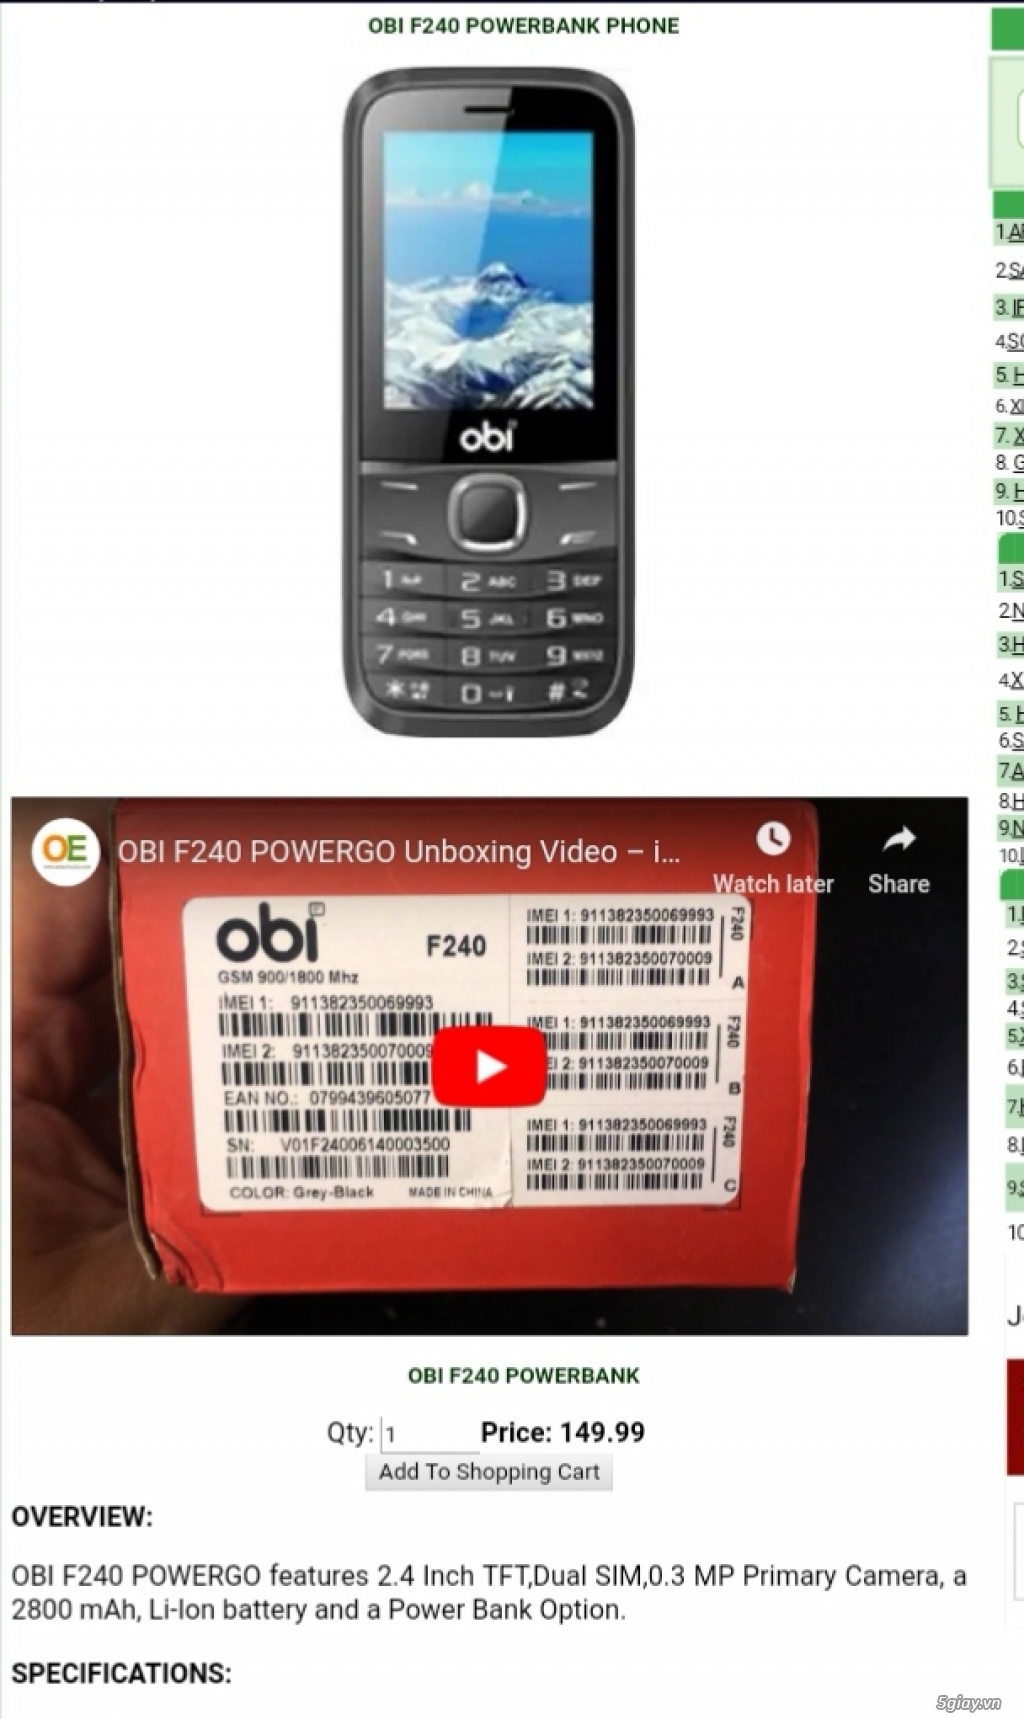 OBI F240 Powerbank phone 2 sim end 23g ngày 27/6/2019 - 2